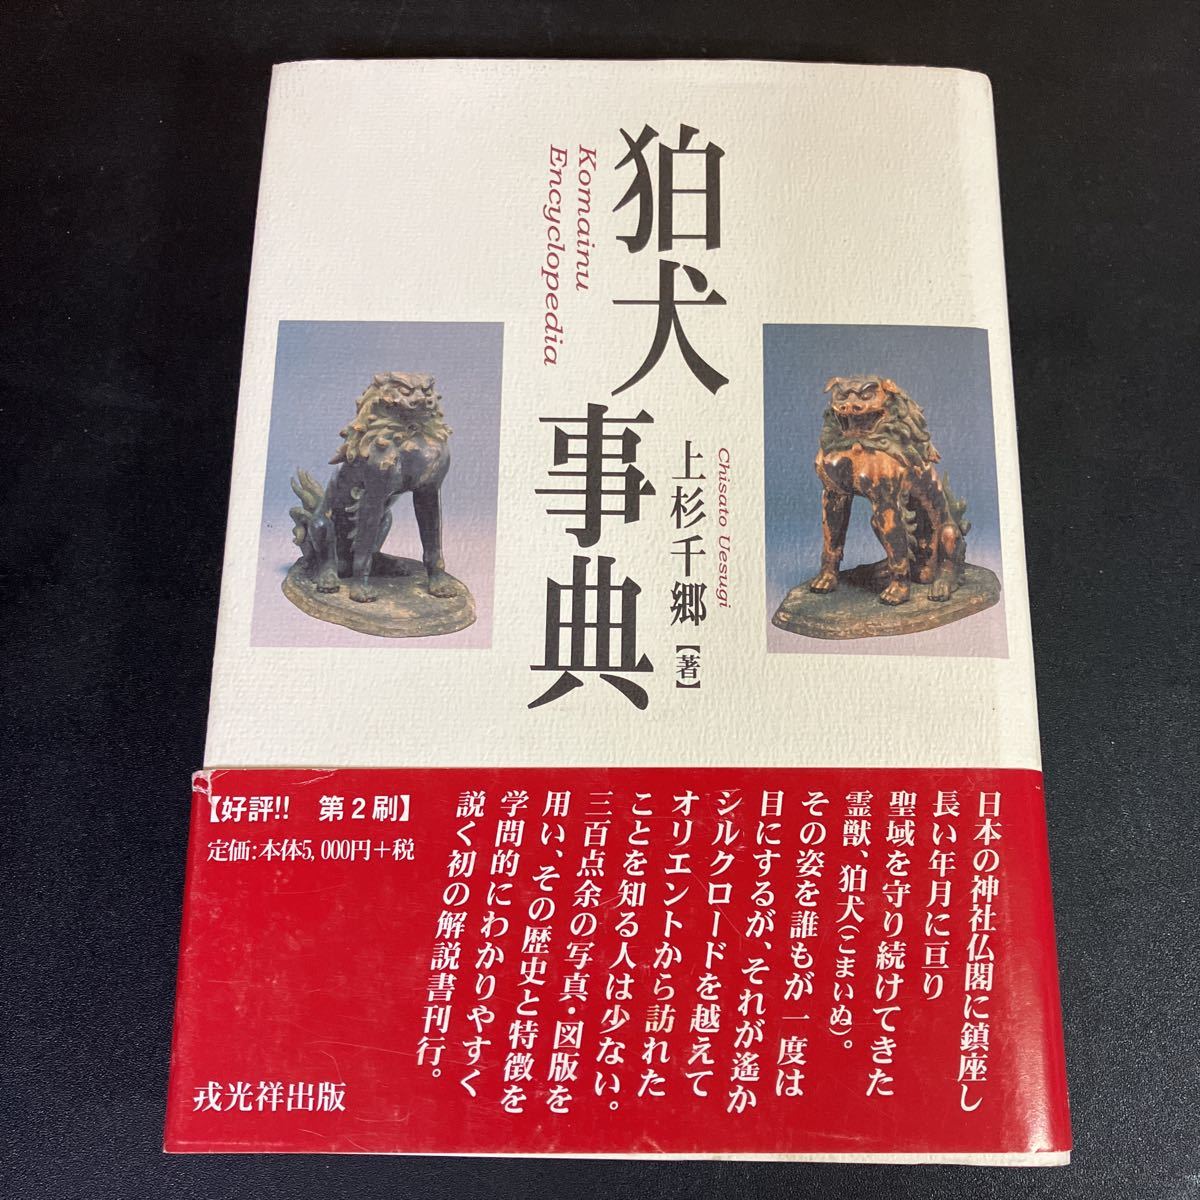 23-8-23『 狛犬事典 』 上杉千郷 戎光祥出版 2001年　狛犬